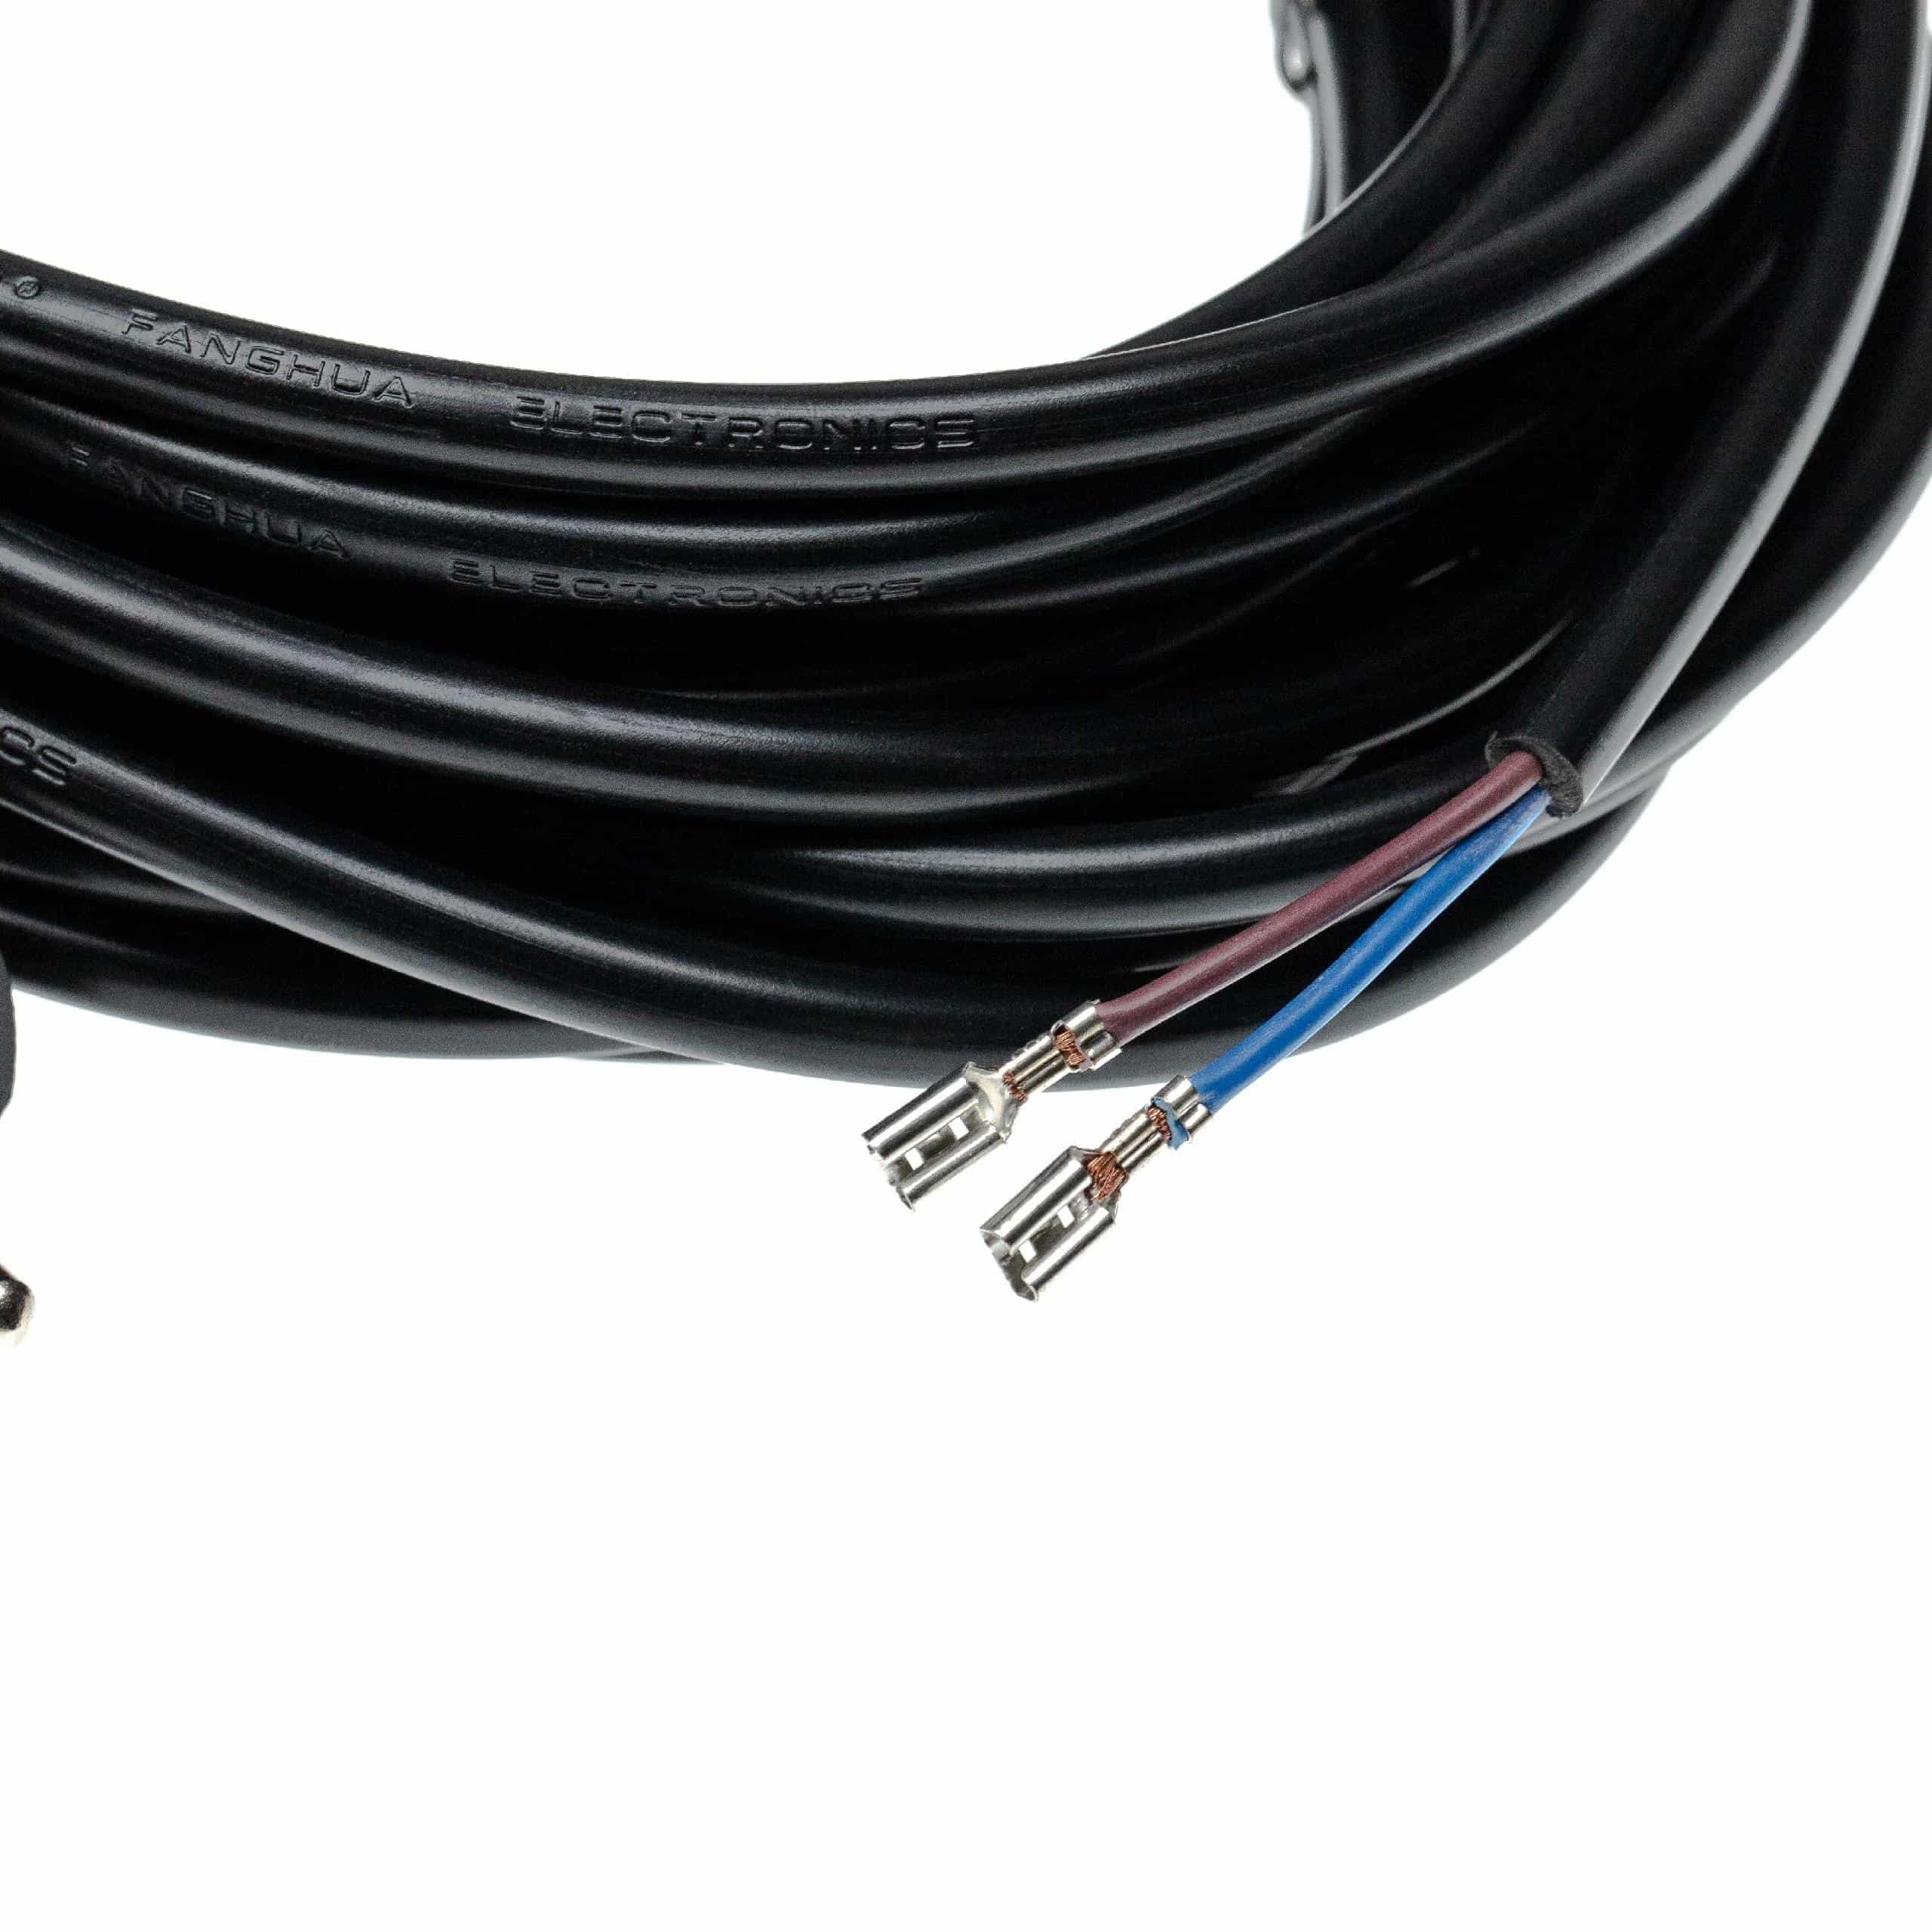 Kabel do odkurzacza Bosch zamiennik Sebo 7128SR, 5260DG - kabel 10 m 1000 W